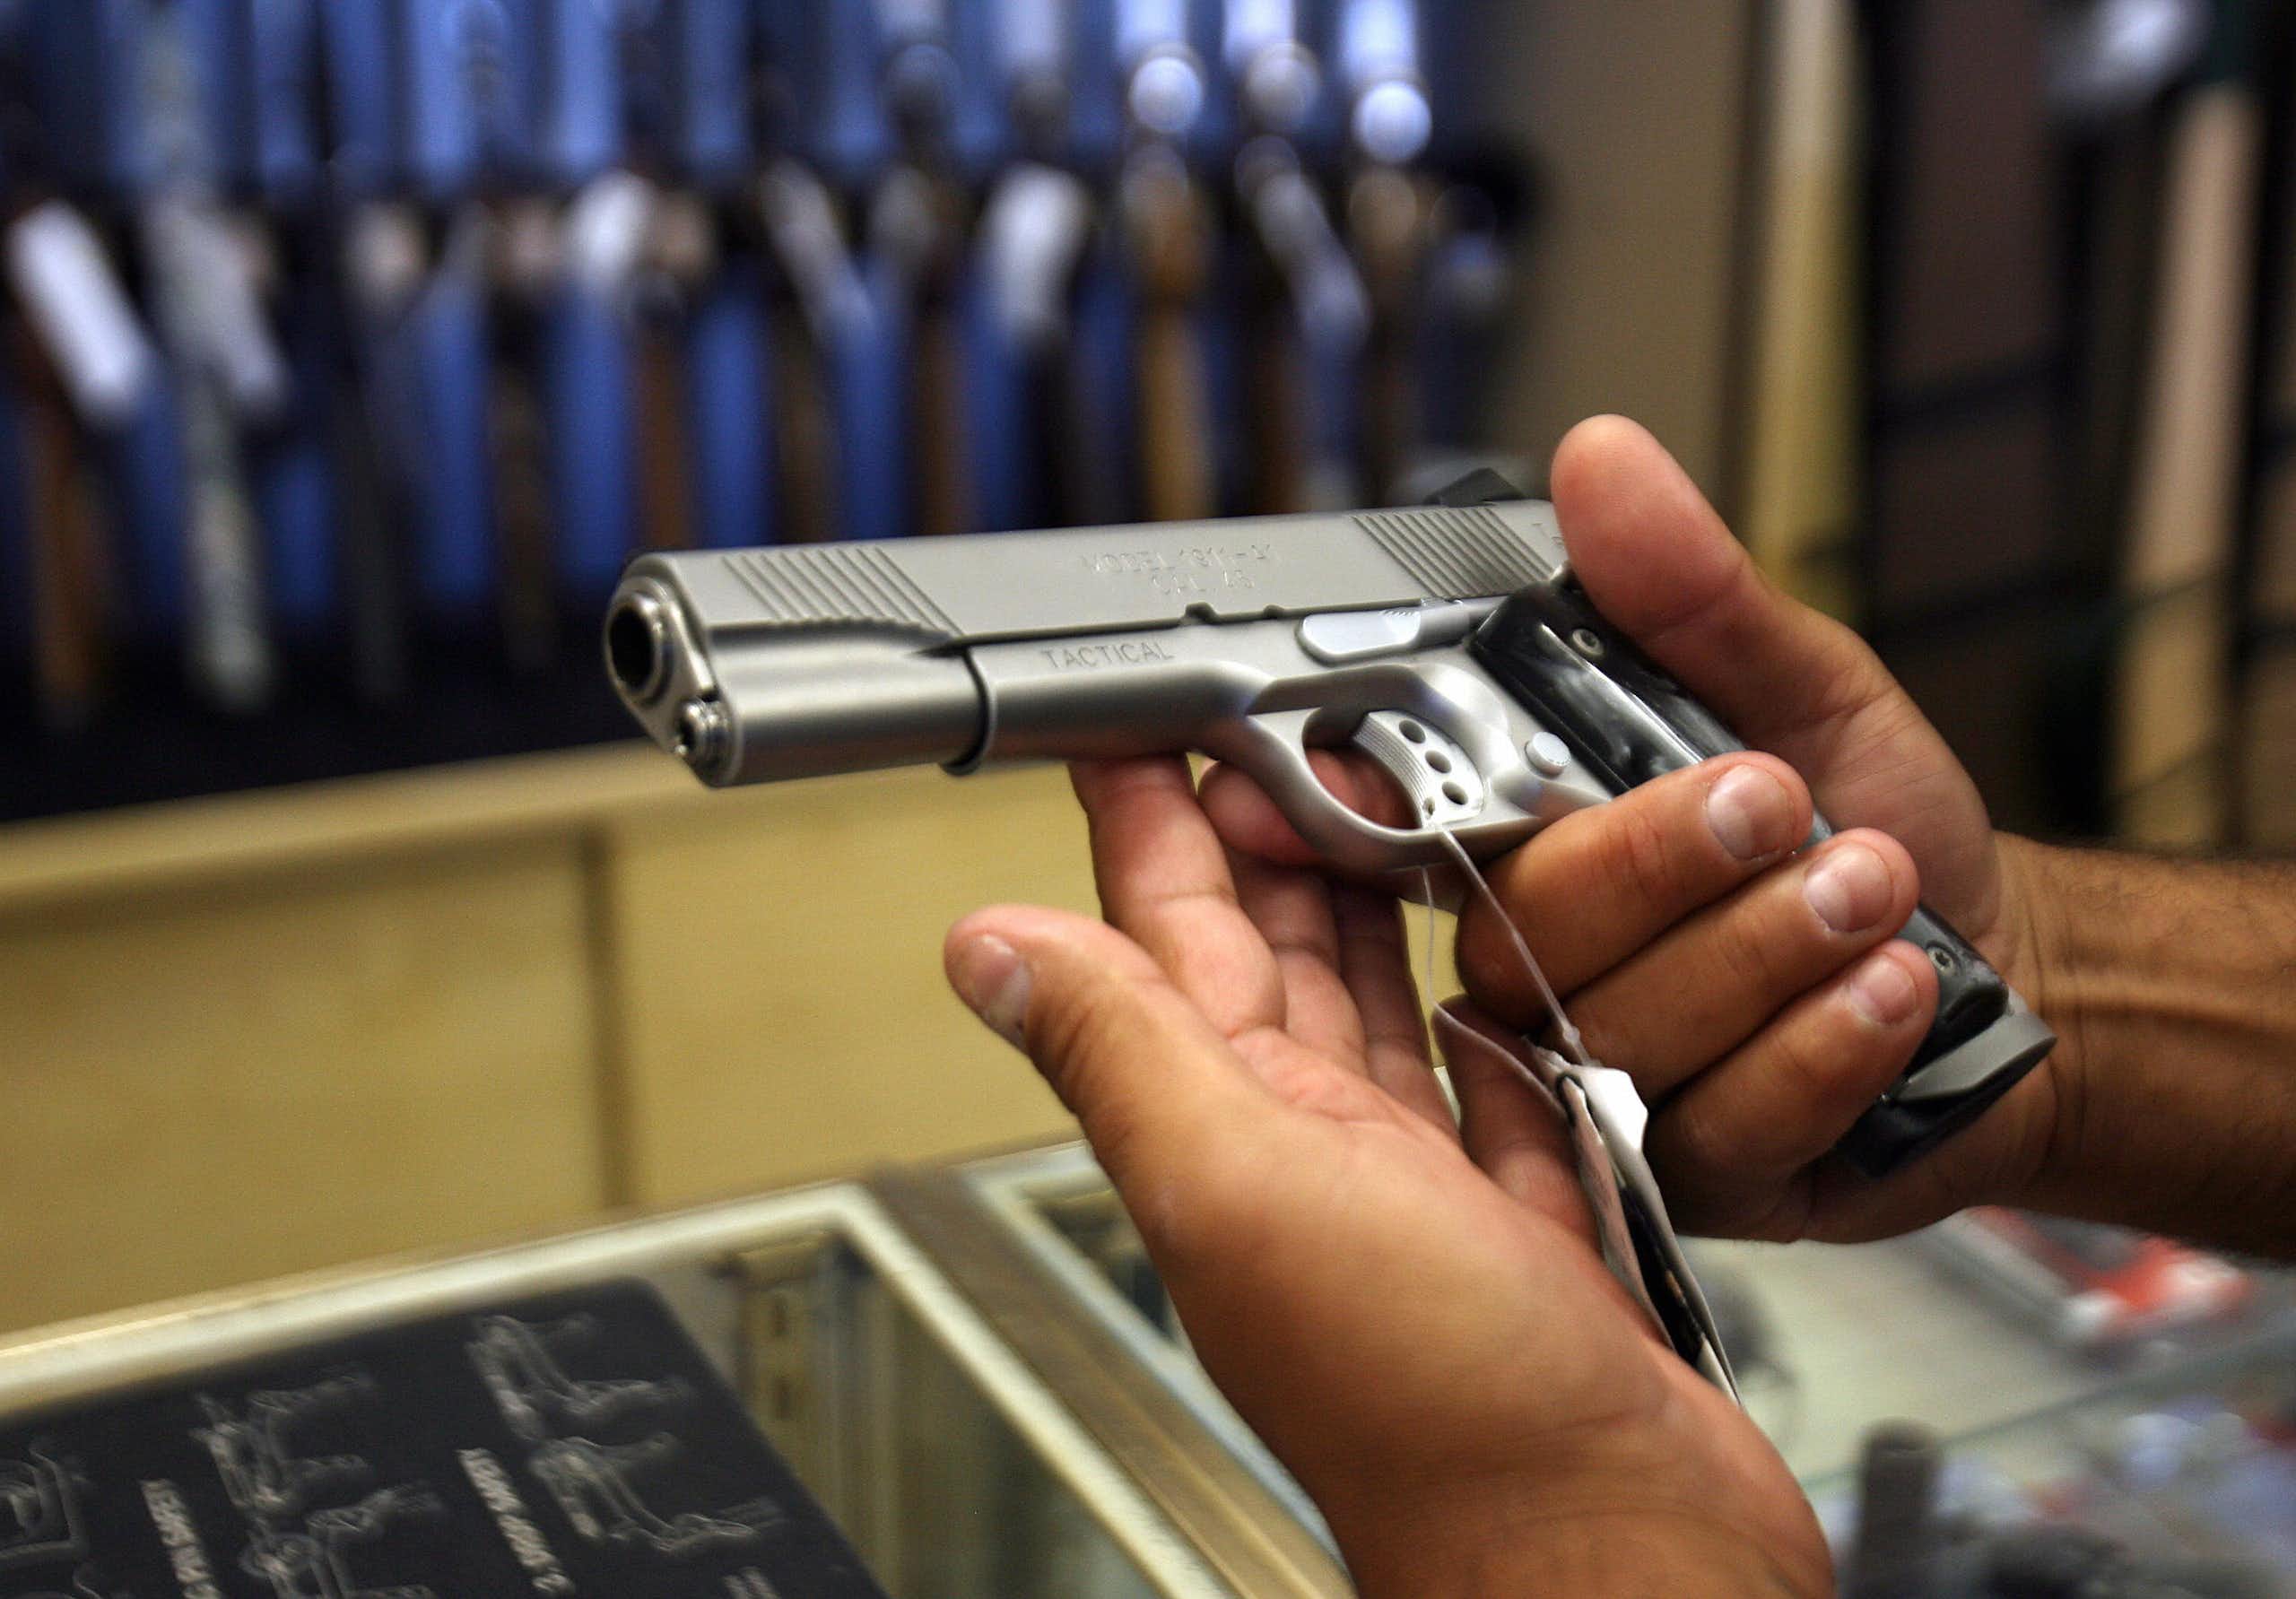 A man examines a handgun in a California gun store.